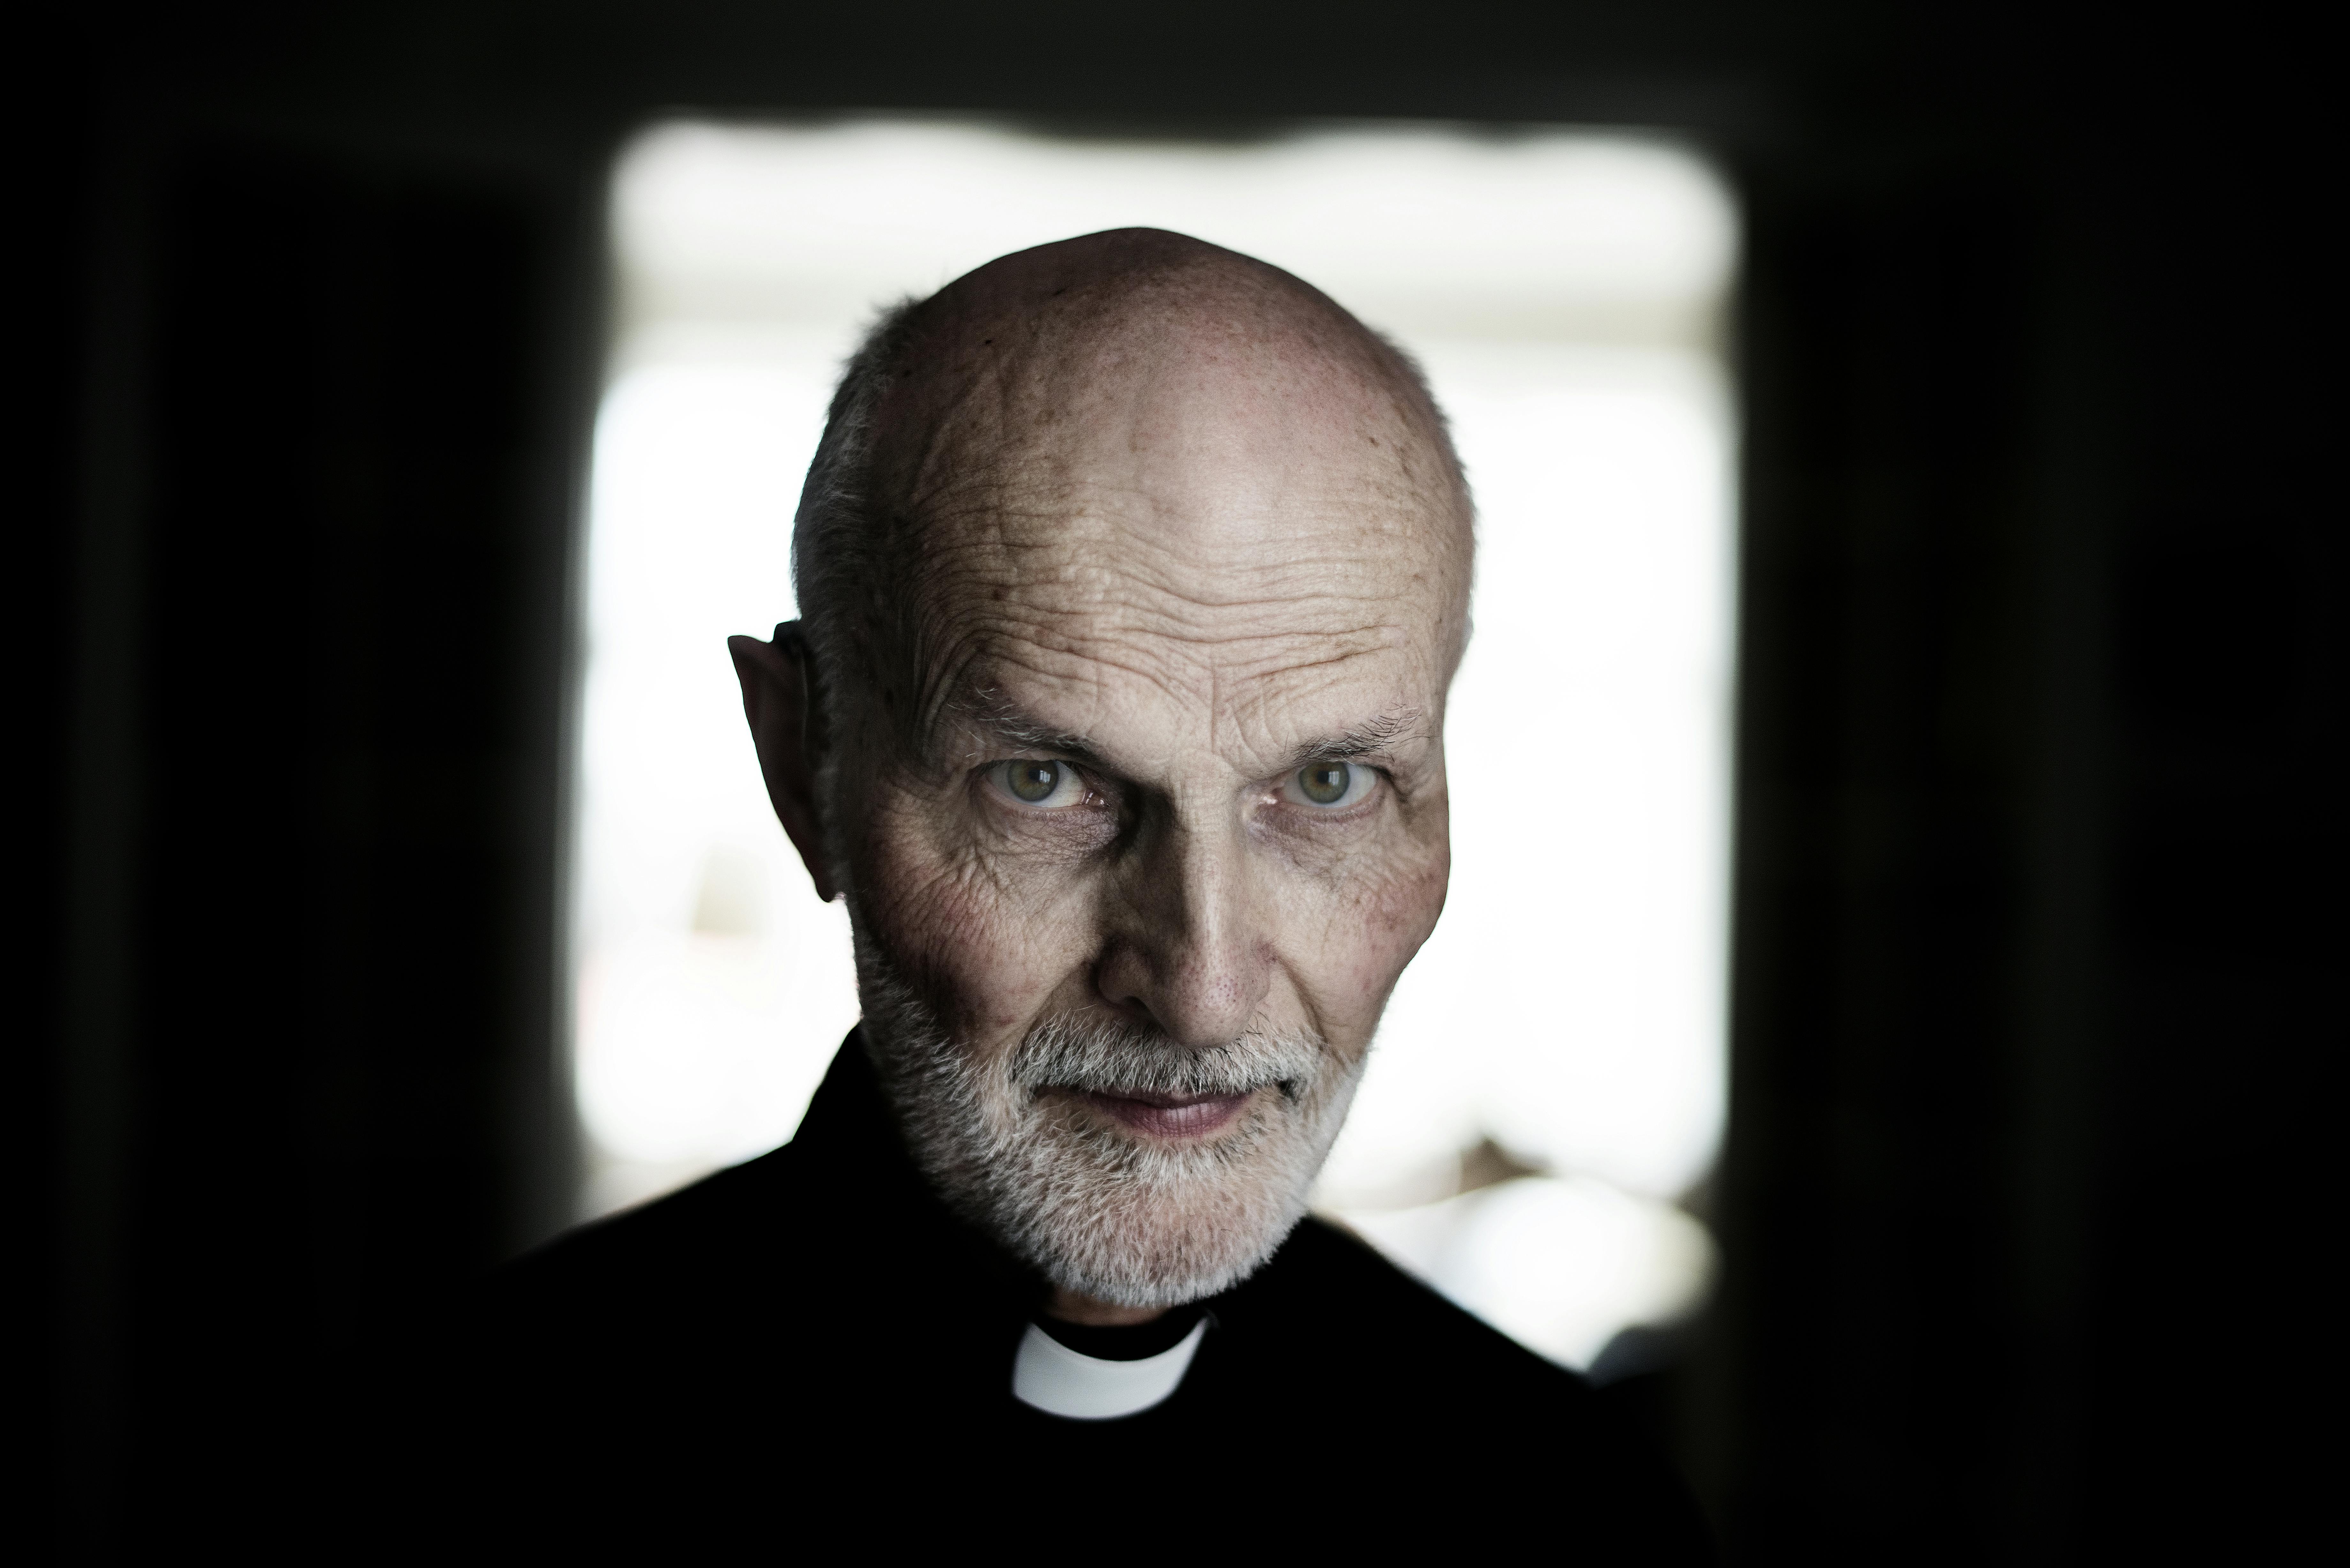 Pastor Lars Messerschmidt